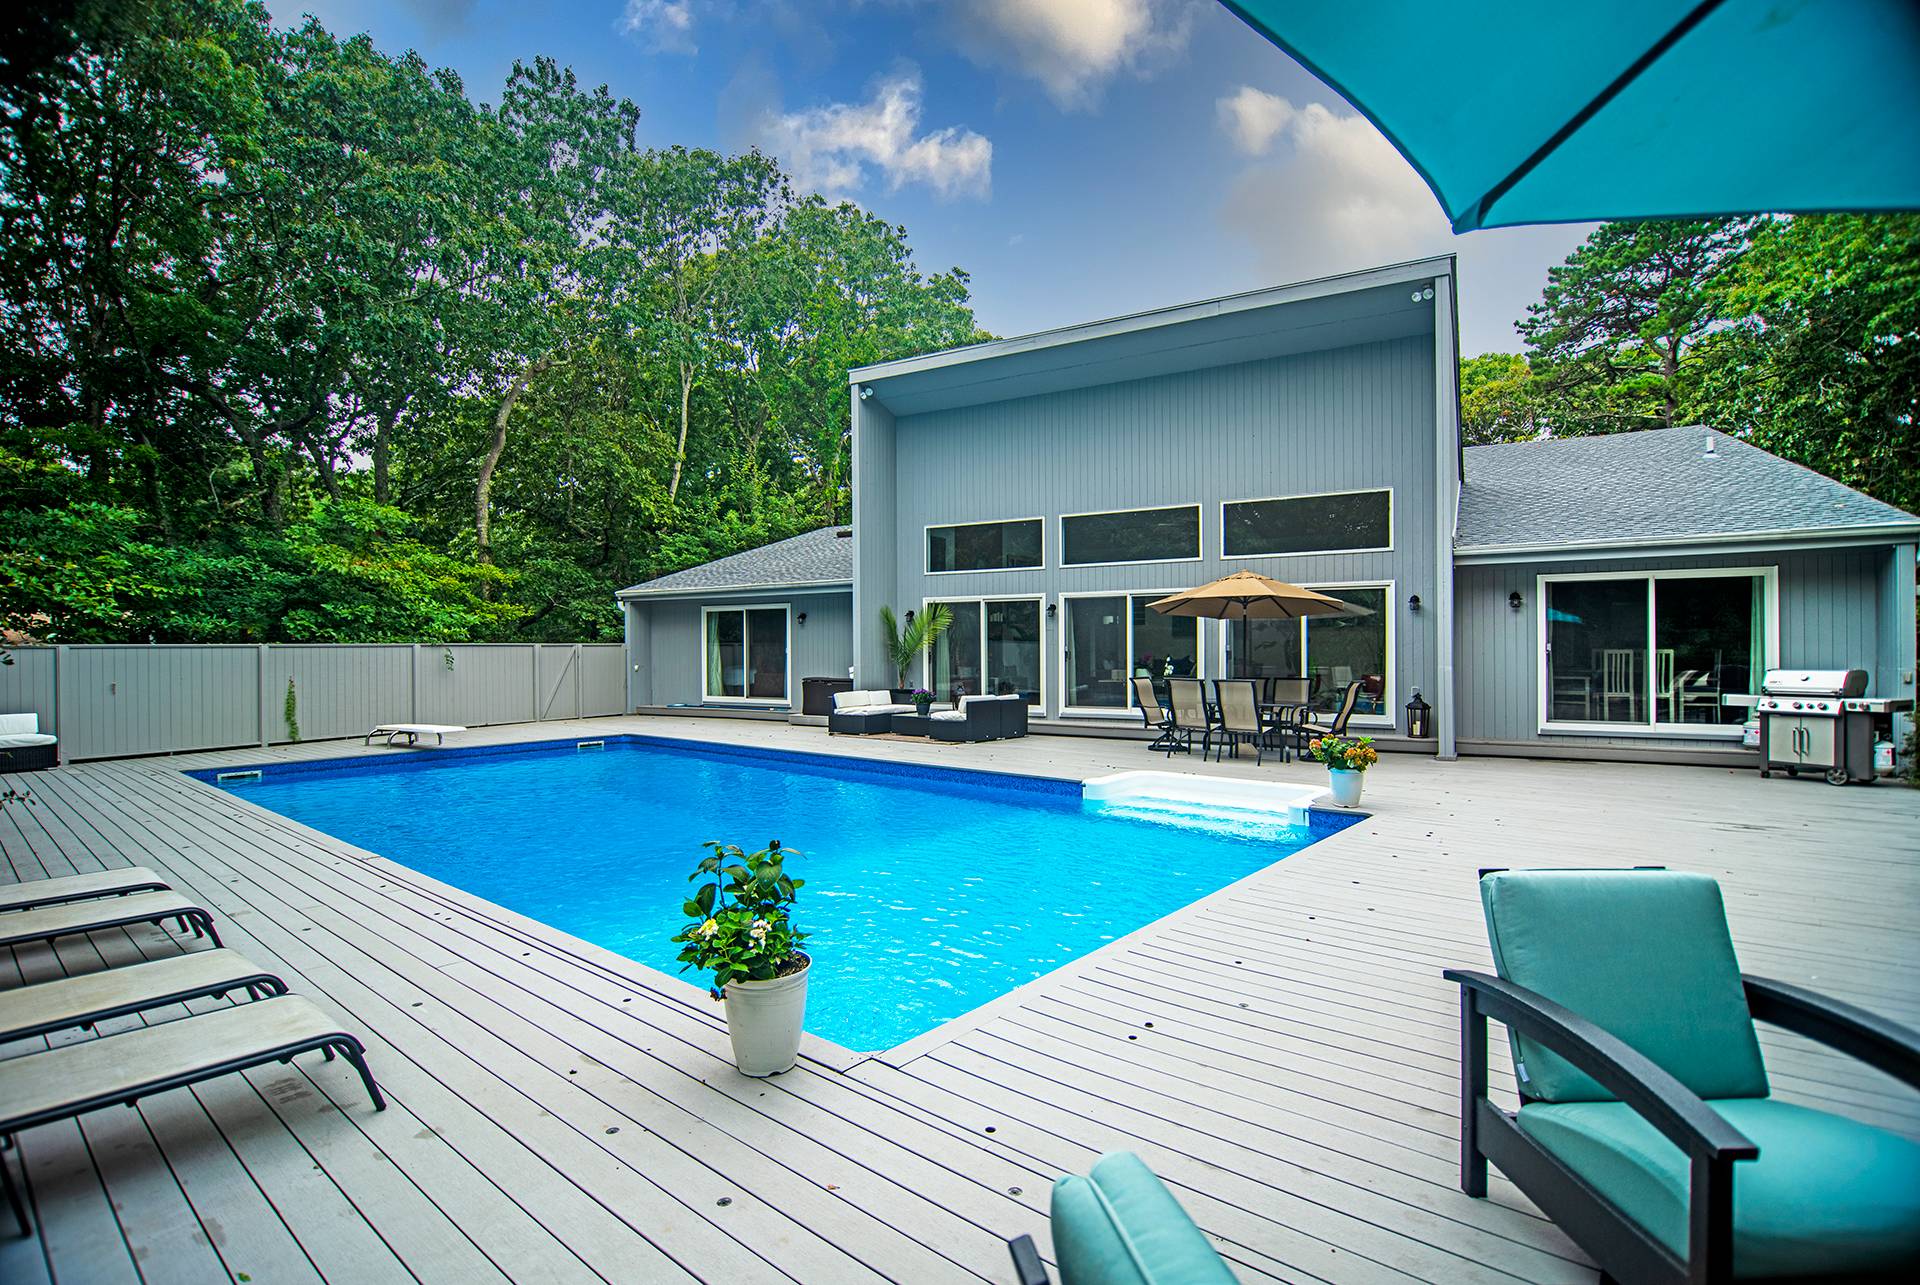 Rental Property at Quogue, Quogue, Hamptons, NY - Bedrooms: 4 
Bathrooms: 3  - $40,000 MO.